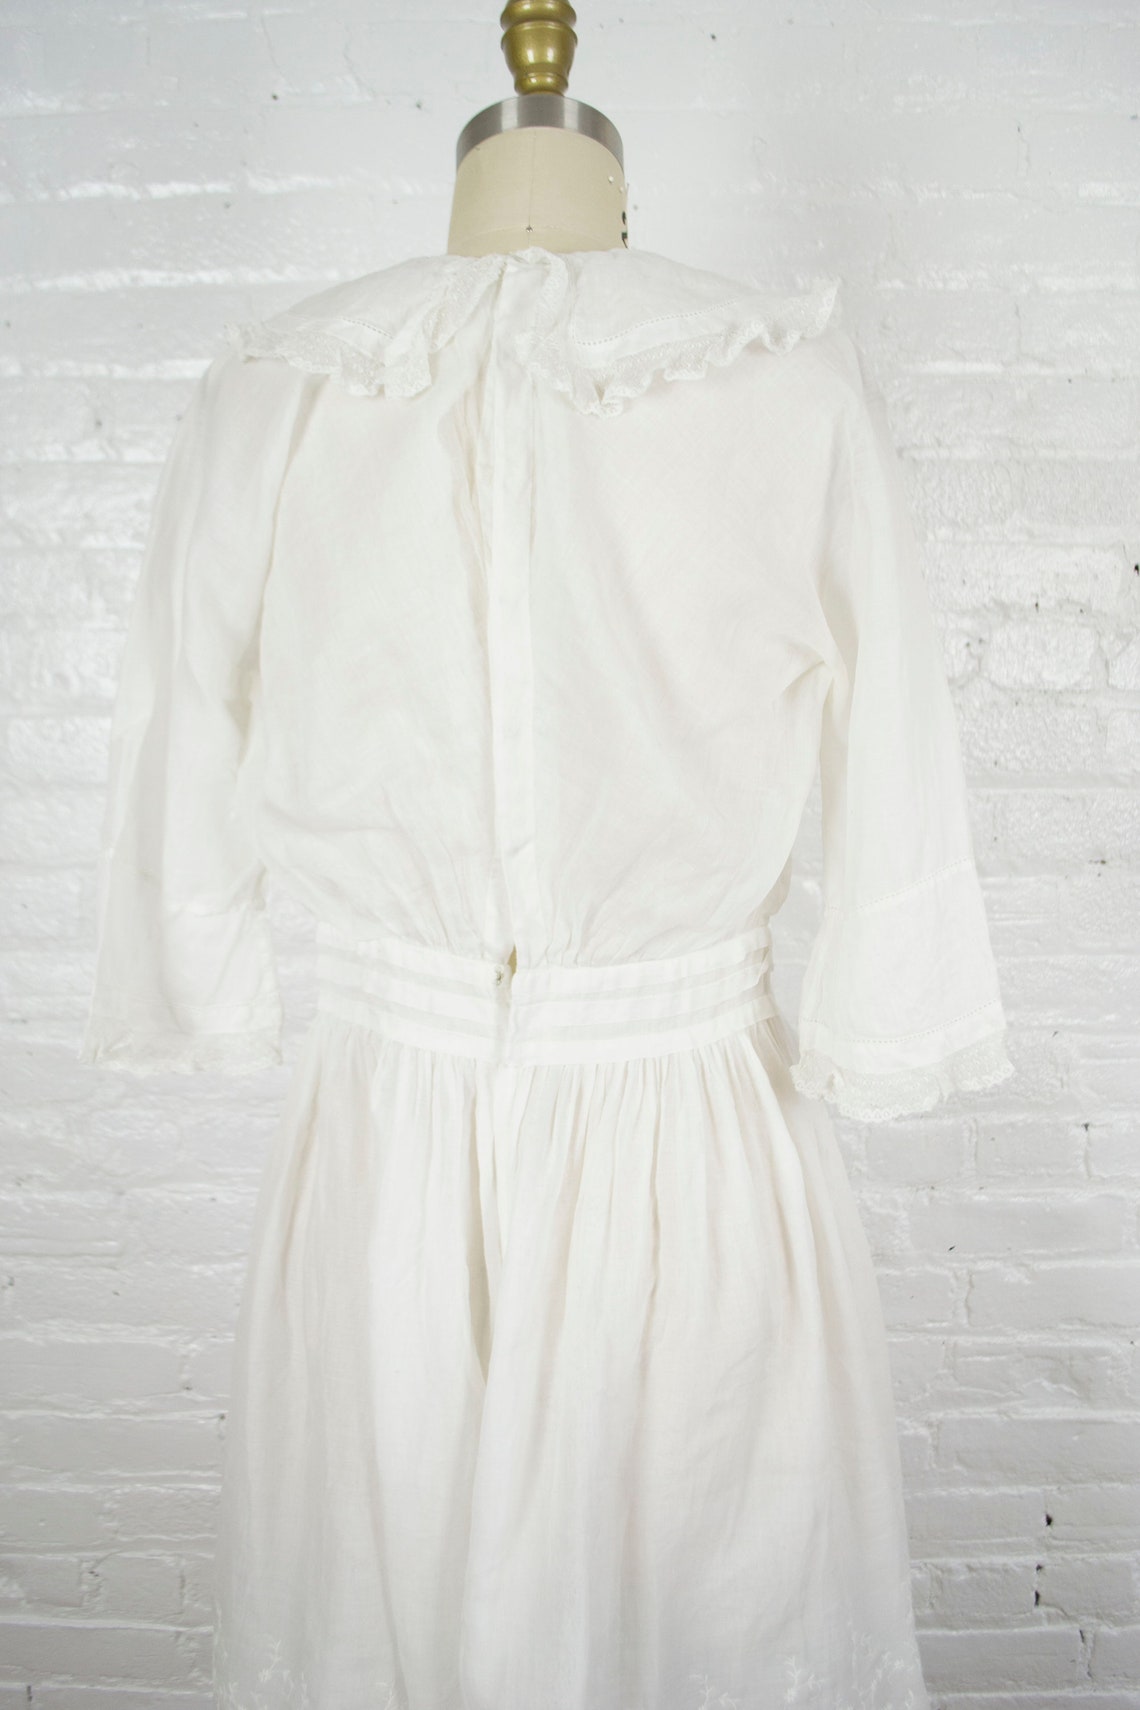 Edwardian tunic dress . 1900-1920s antique white sheer cotton | Etsy